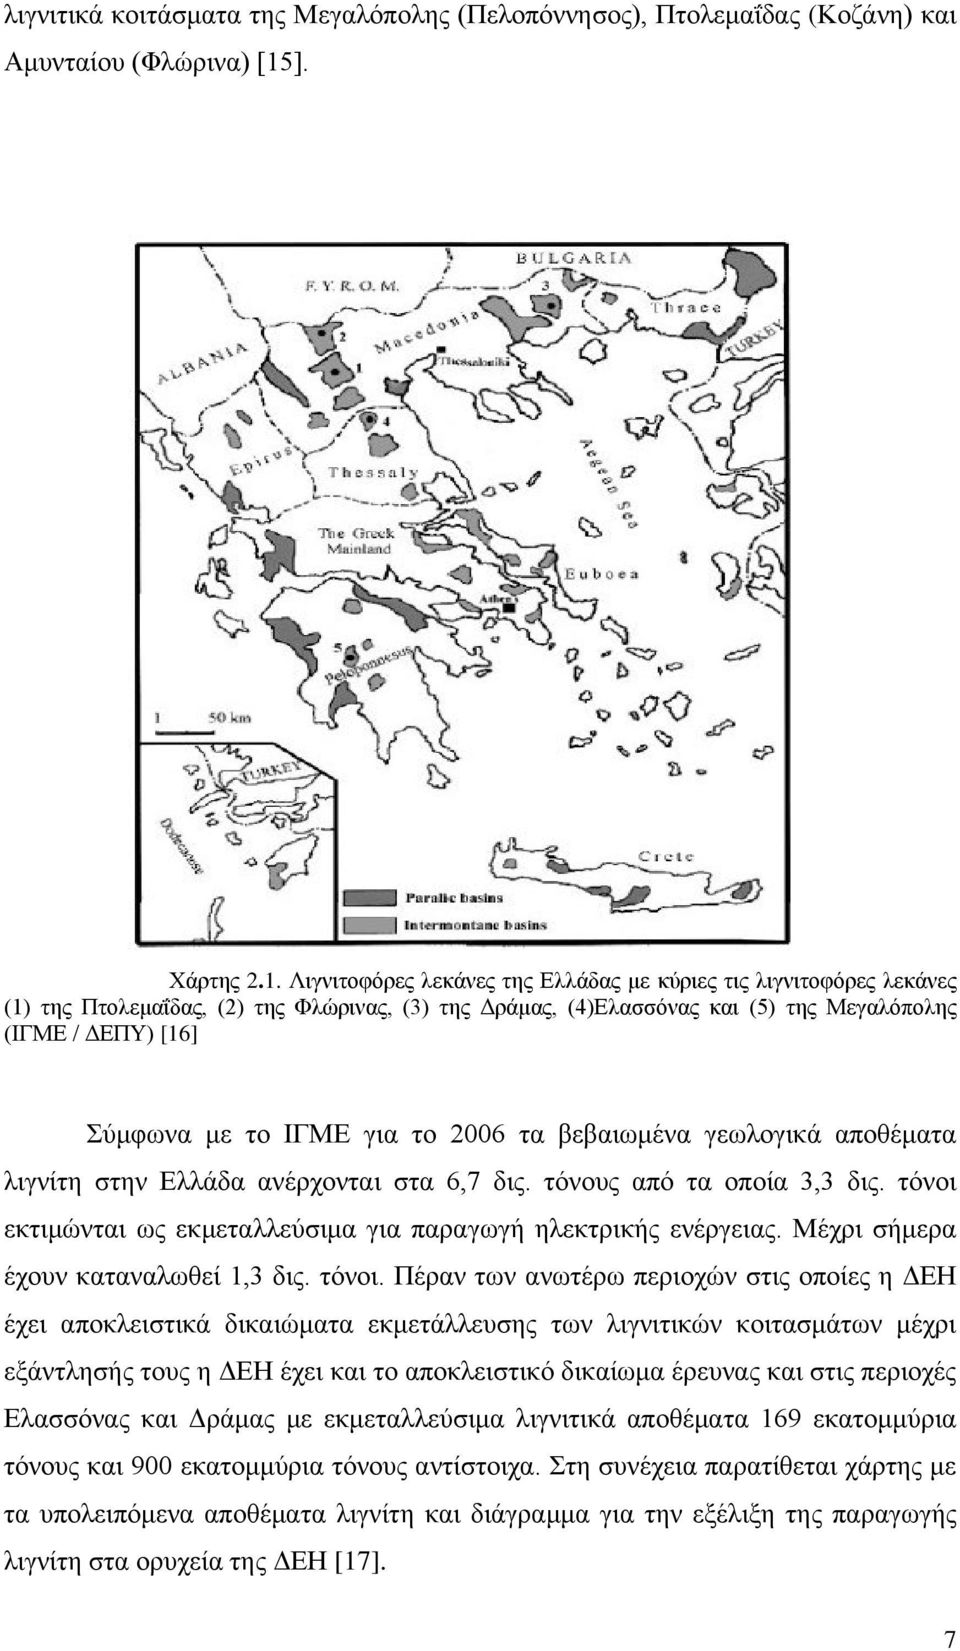 Λιγνιτοφόρες λεκάνες της Ελλάδας με κύριες τις λιγνιτοφόρες λεκάνες (1) της Πτολεμαΐδας, (2) της Φλώρινας, (3) της Δράμας, (4)Ελασσόνας και (5) της Μεγαλόπολης (ΙΓΜΕ / ΔΕΠΥ) [16] Σύμφωνα με το ΙΓΜΕ